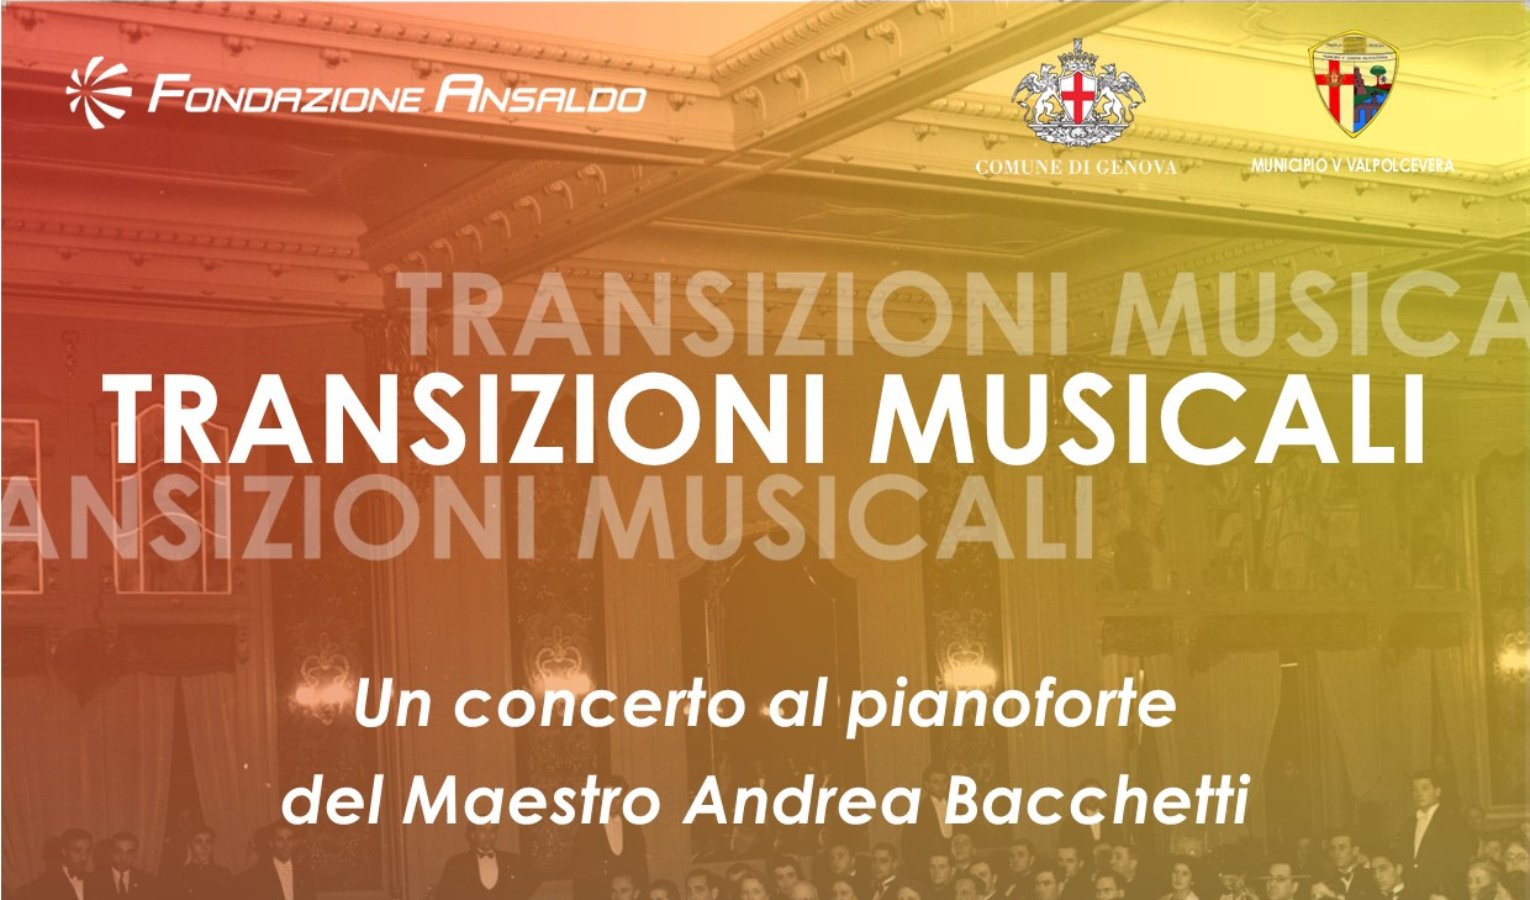 Fondazione Ansaldo, il 10 settembre il concerto al pianoforte del maestro Bacchetti